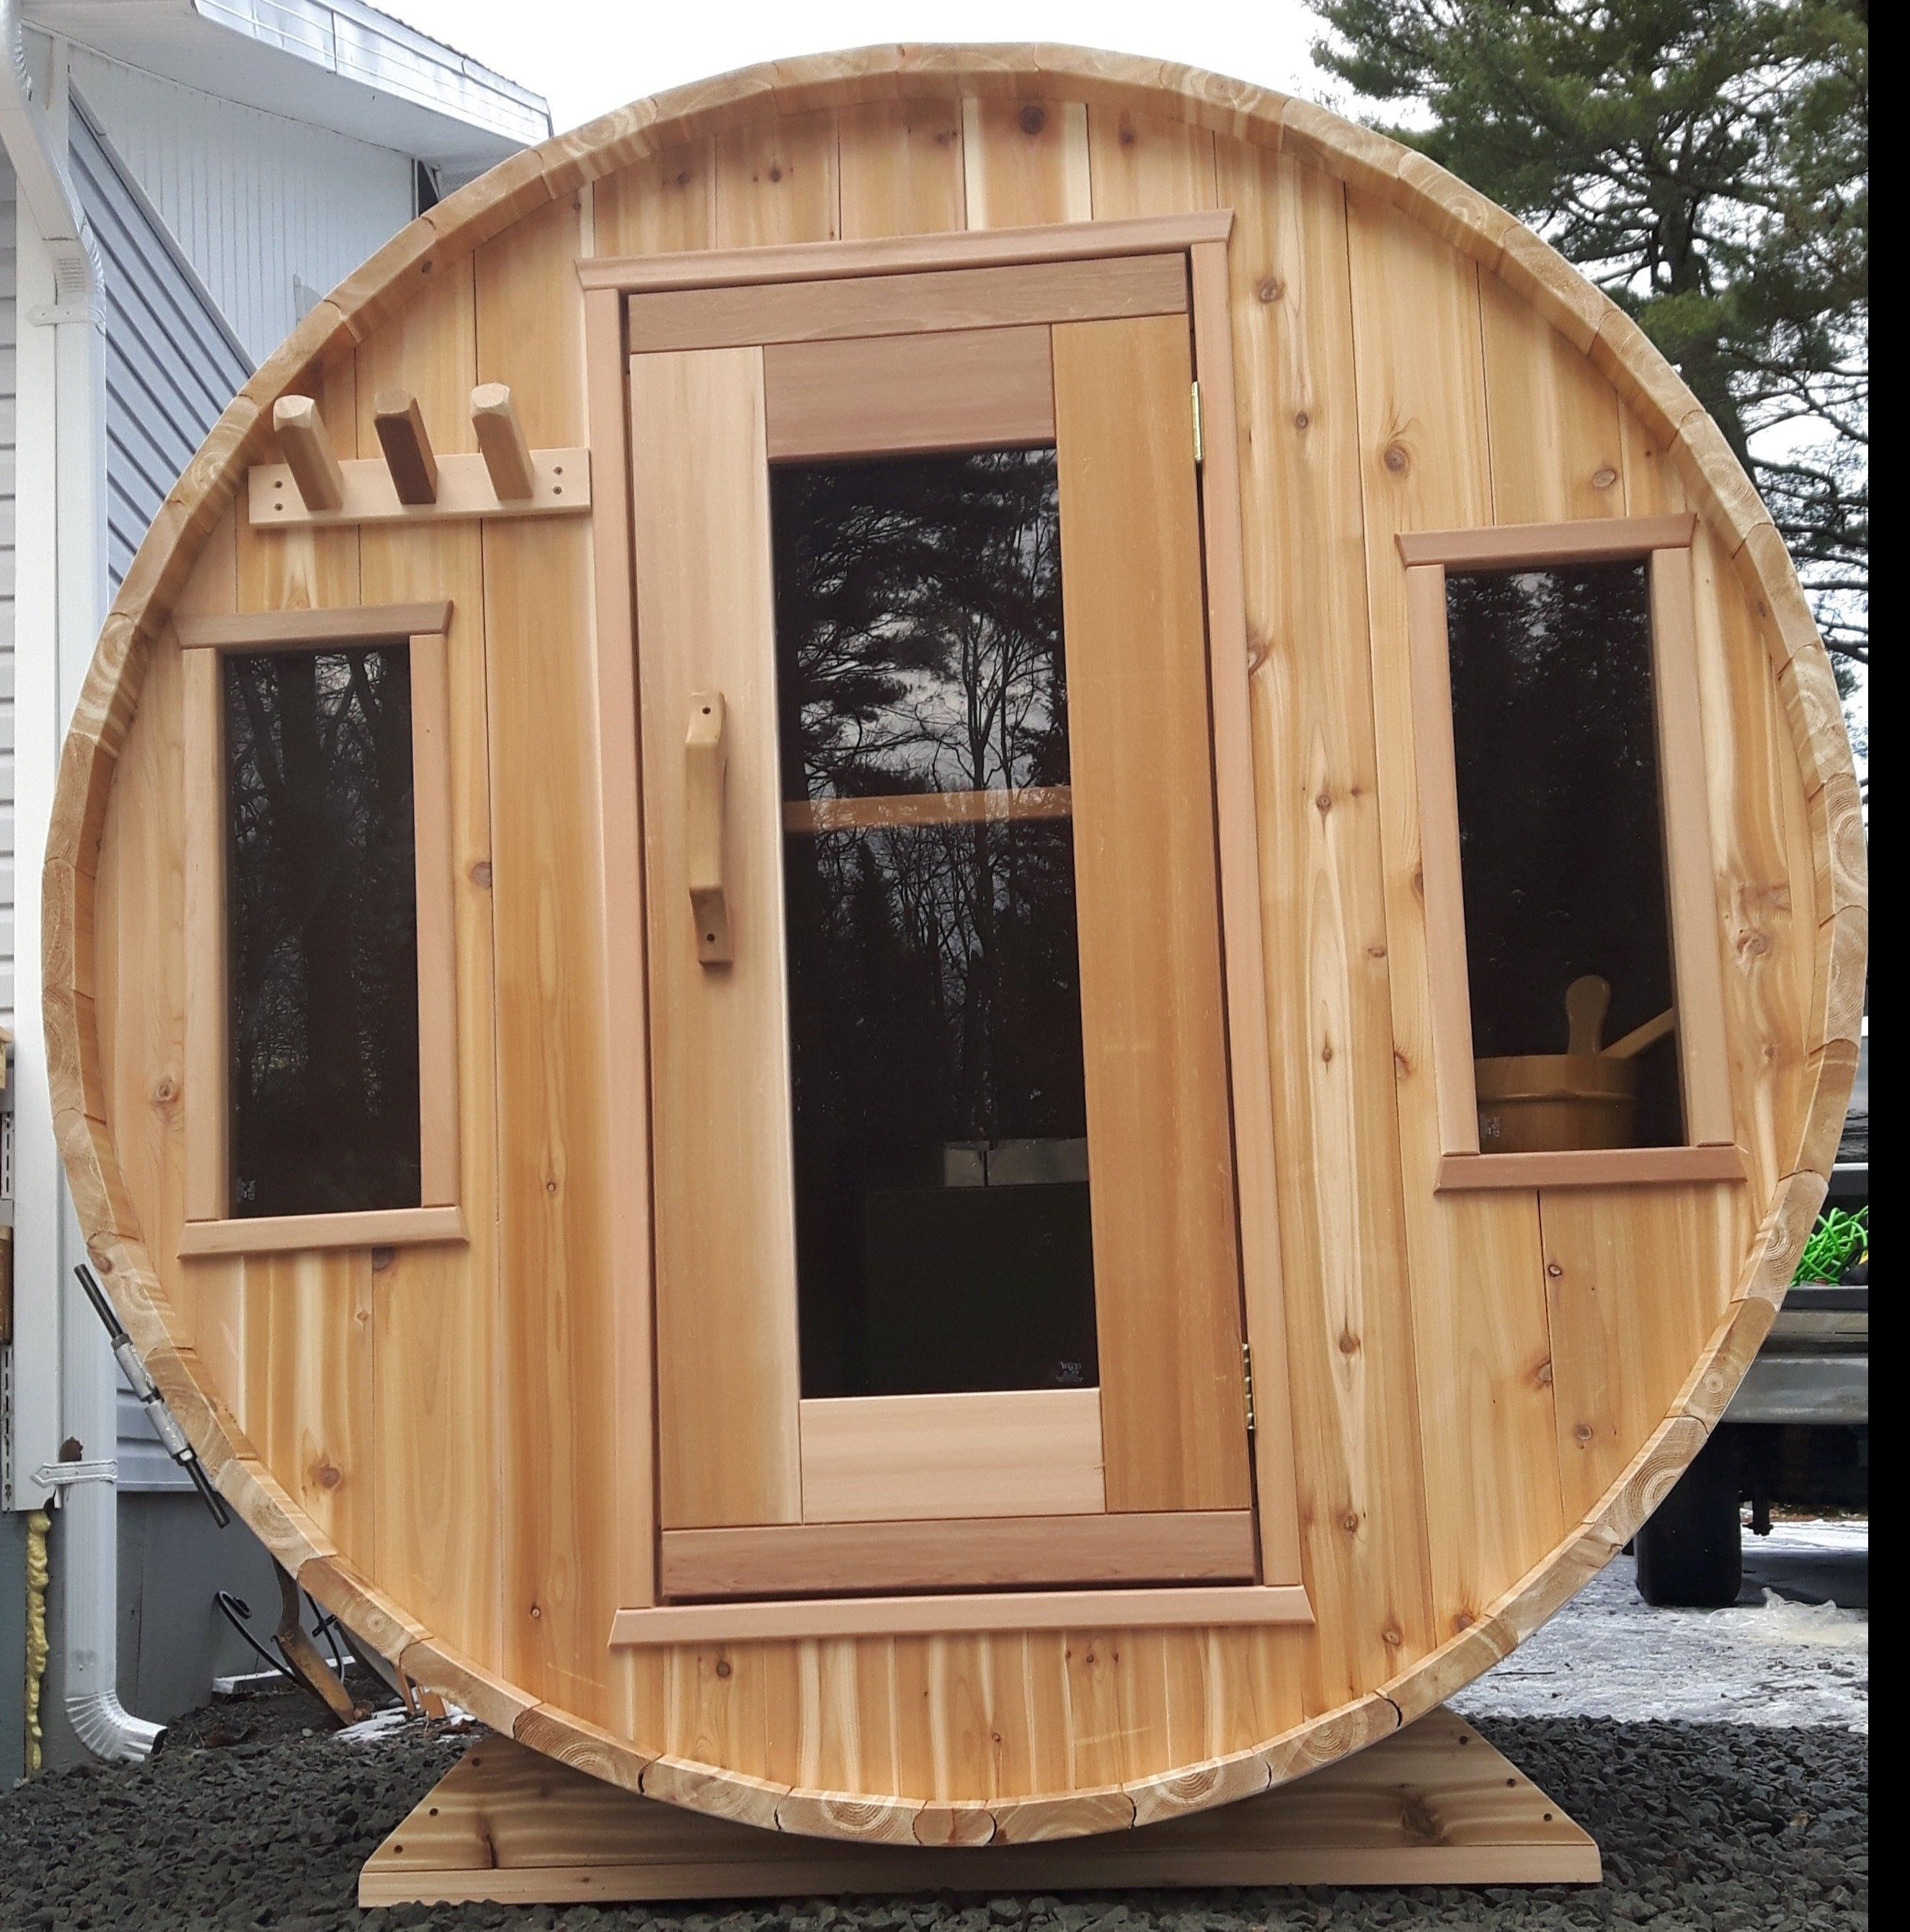 Knotty Barrel sauna with 2 windows